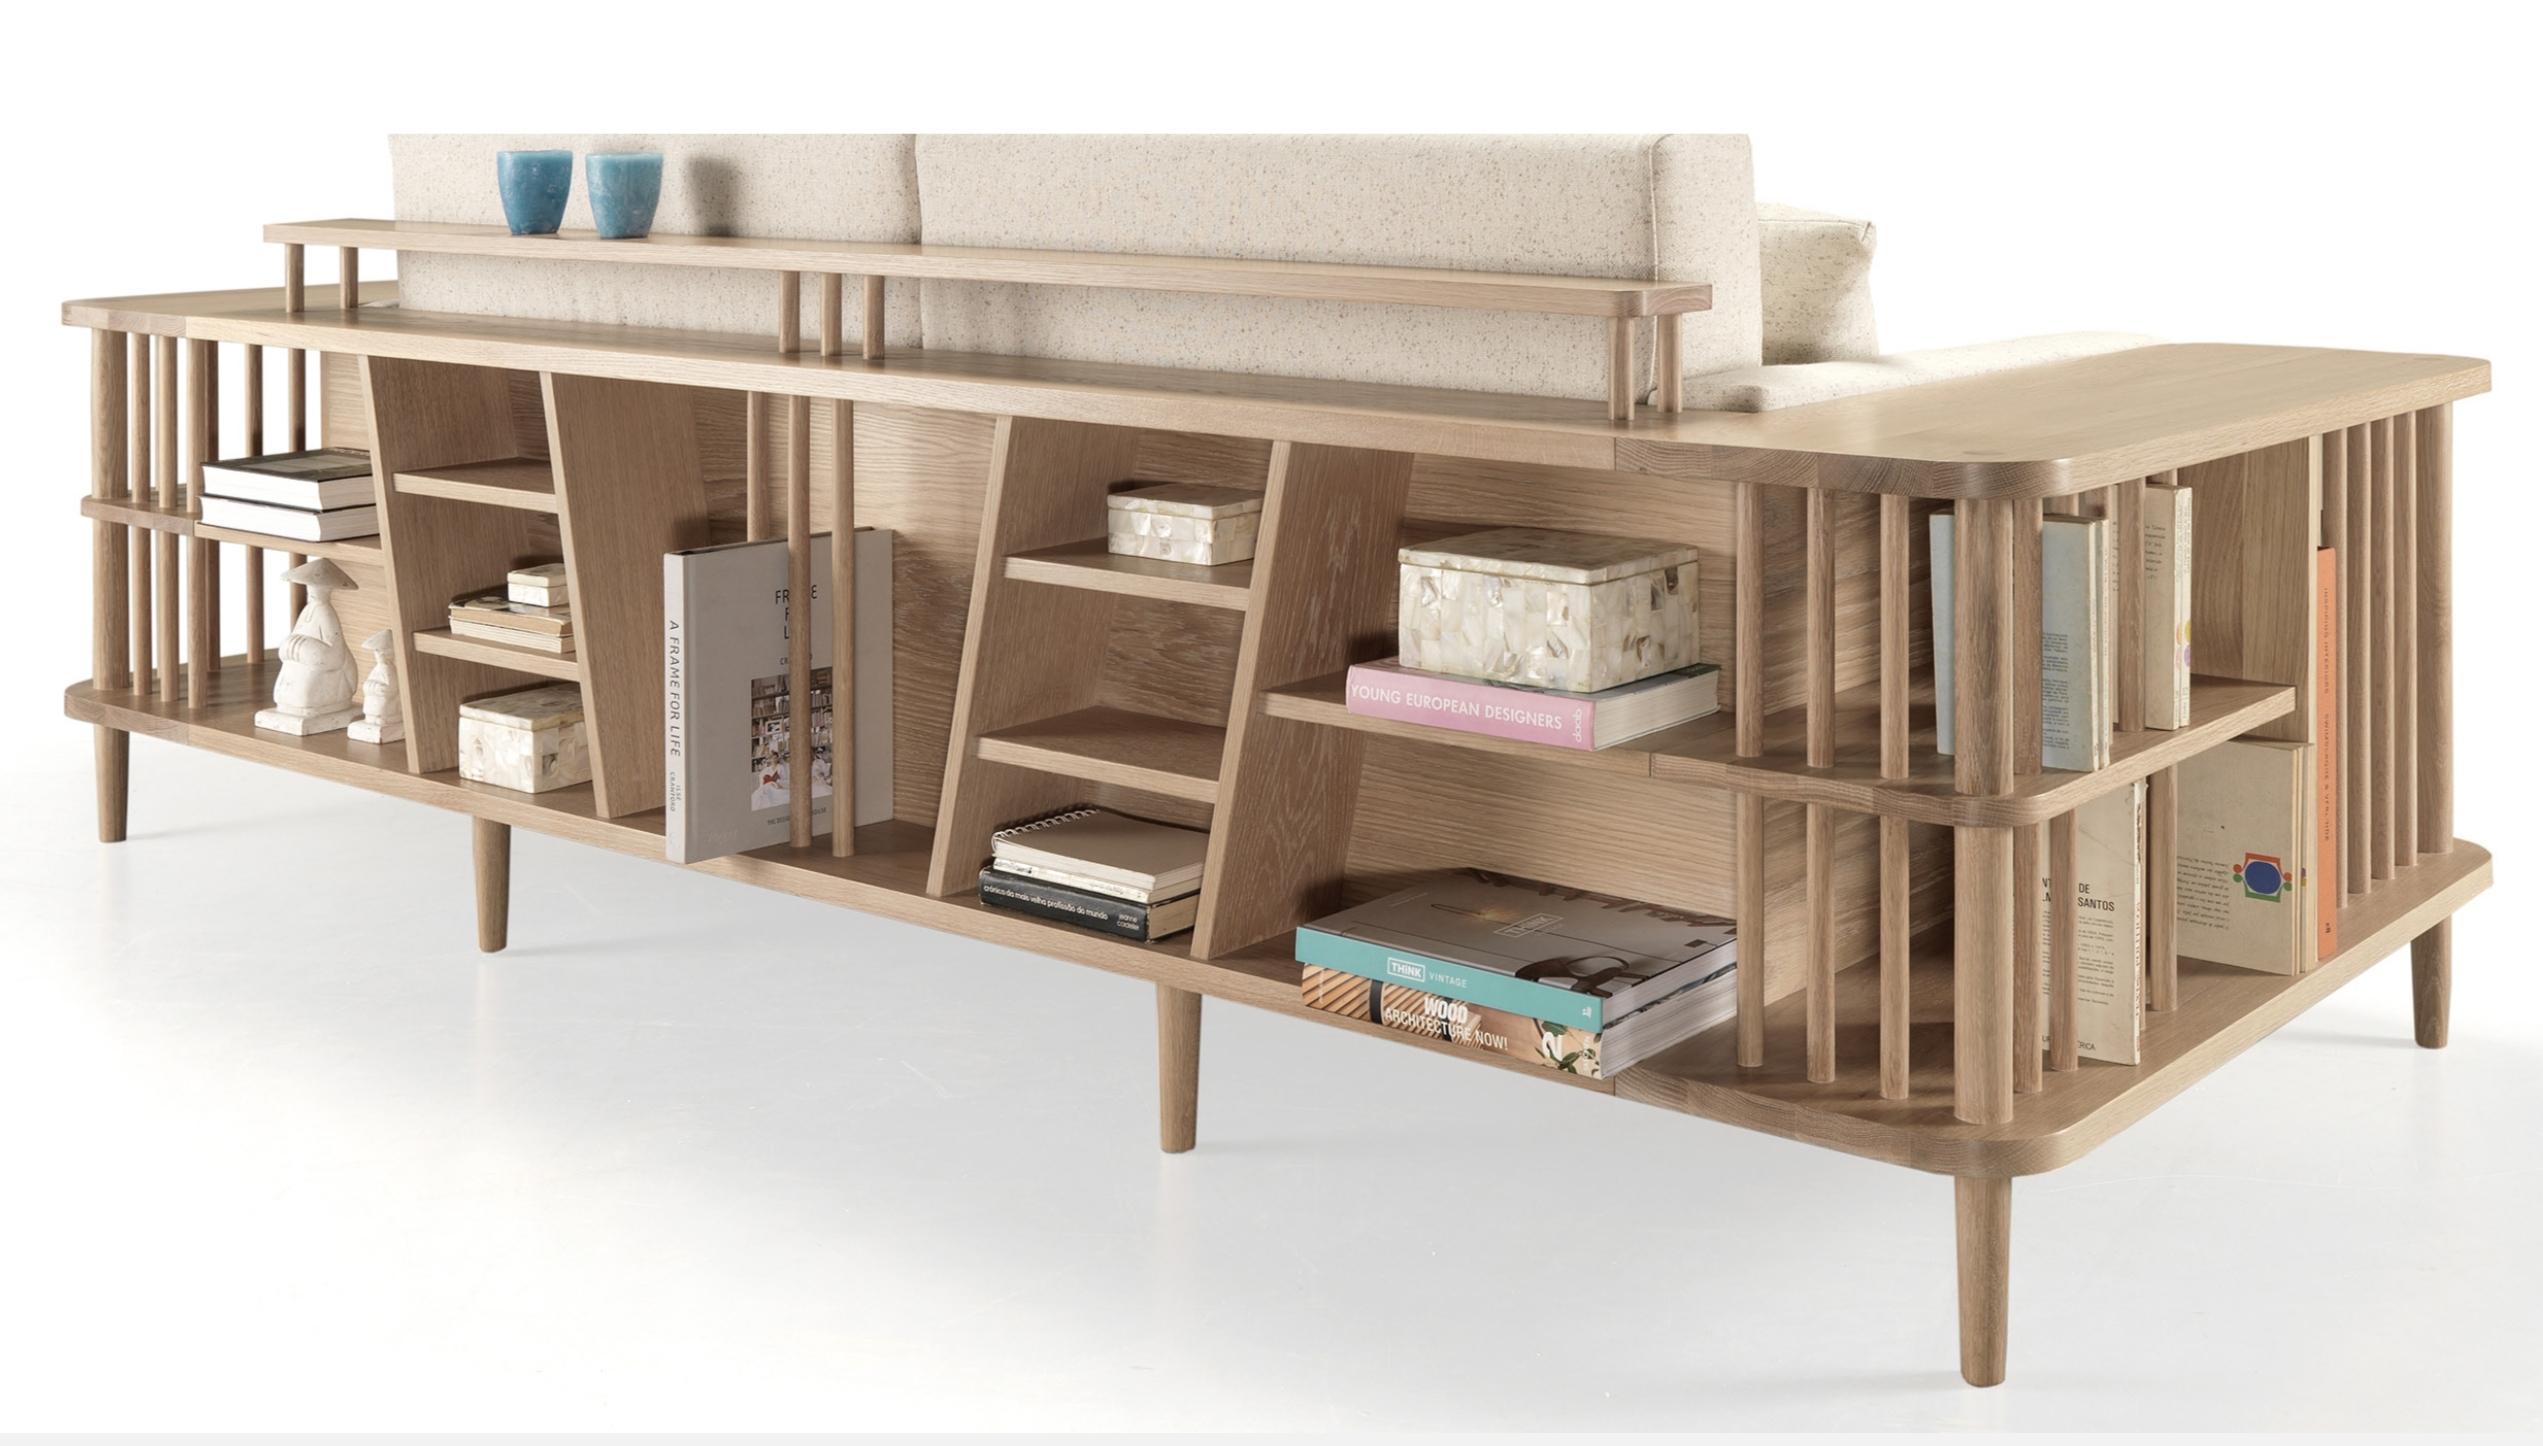 Scandinave moderne Design Sofa and Bookshelf Room Divider (Diviseur de pièce avec canapé et bibliothèque) en vente